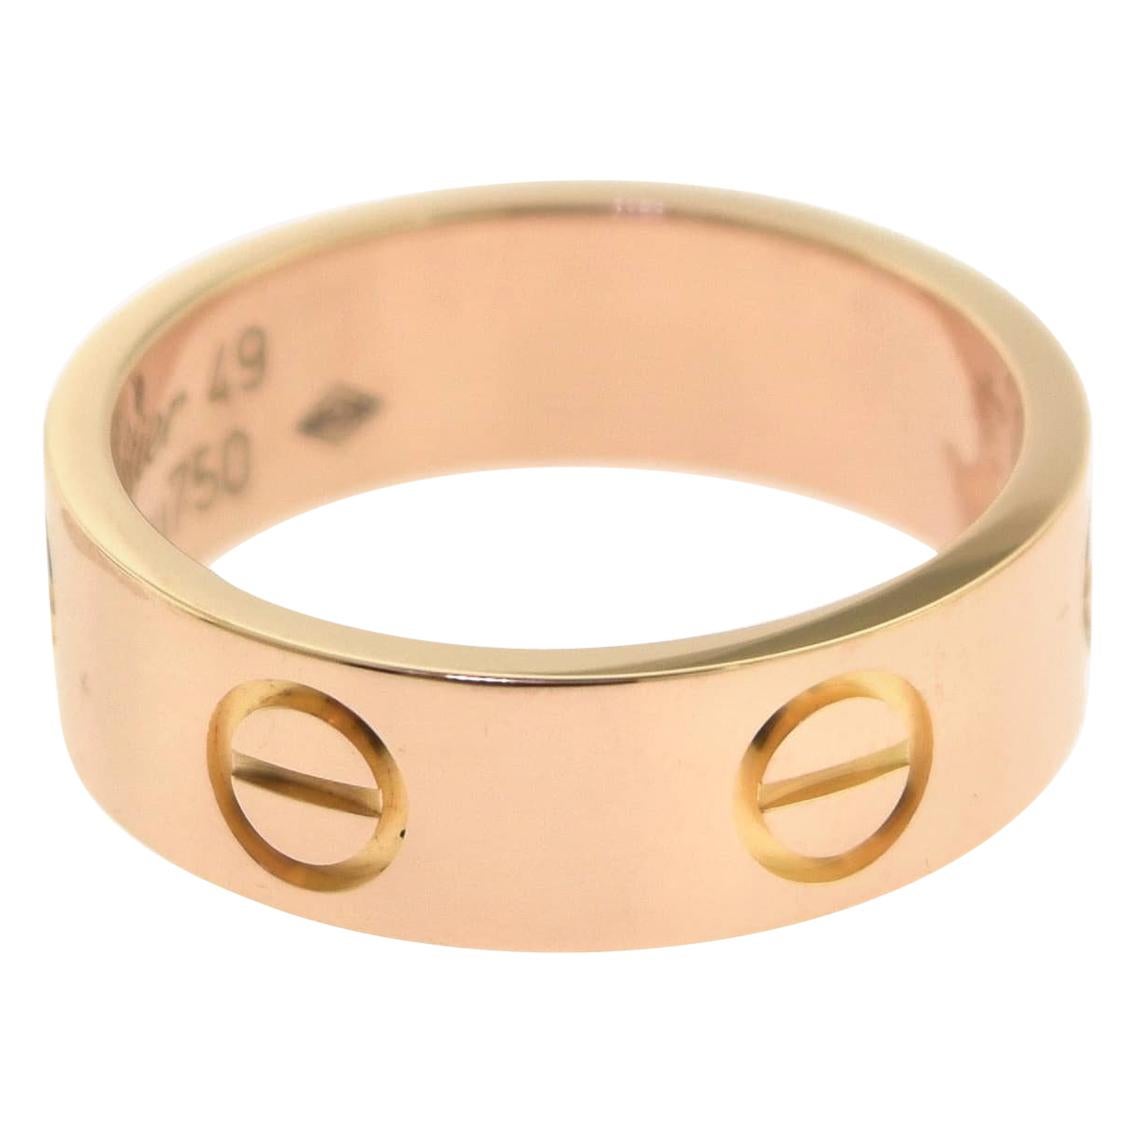 Cartier Love Ring in 18 Karat Rose Gold Ring